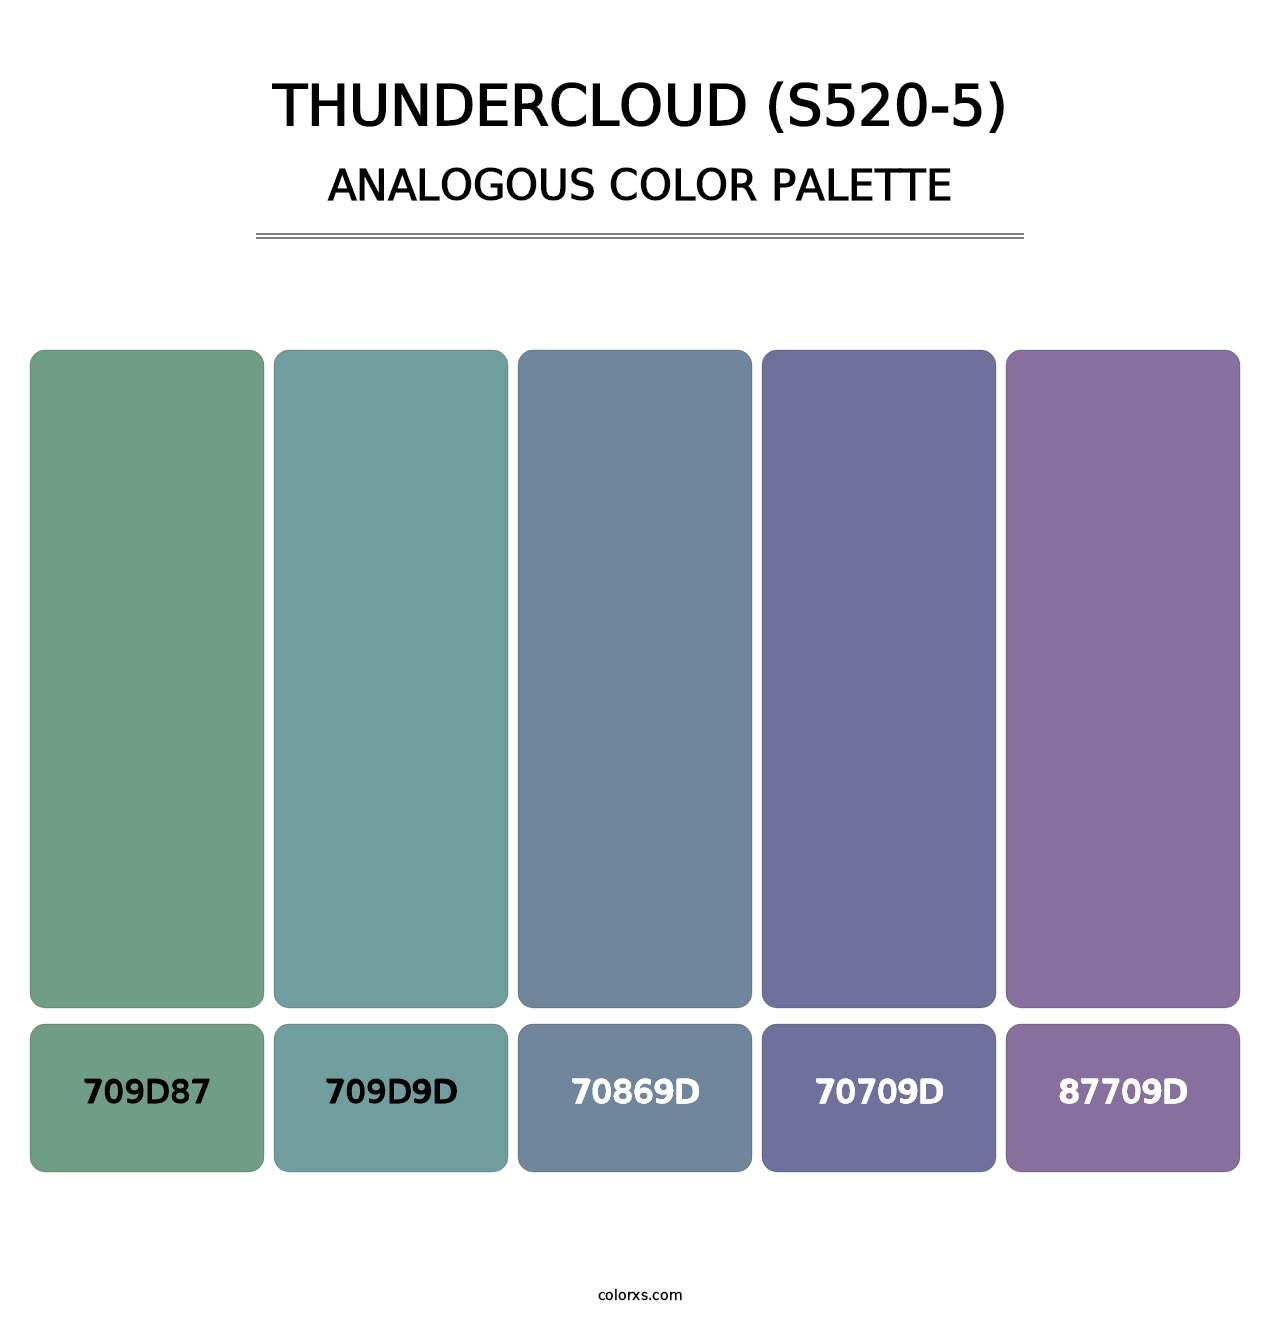 Thundercloud (S520-5) - Analogous Color Palette